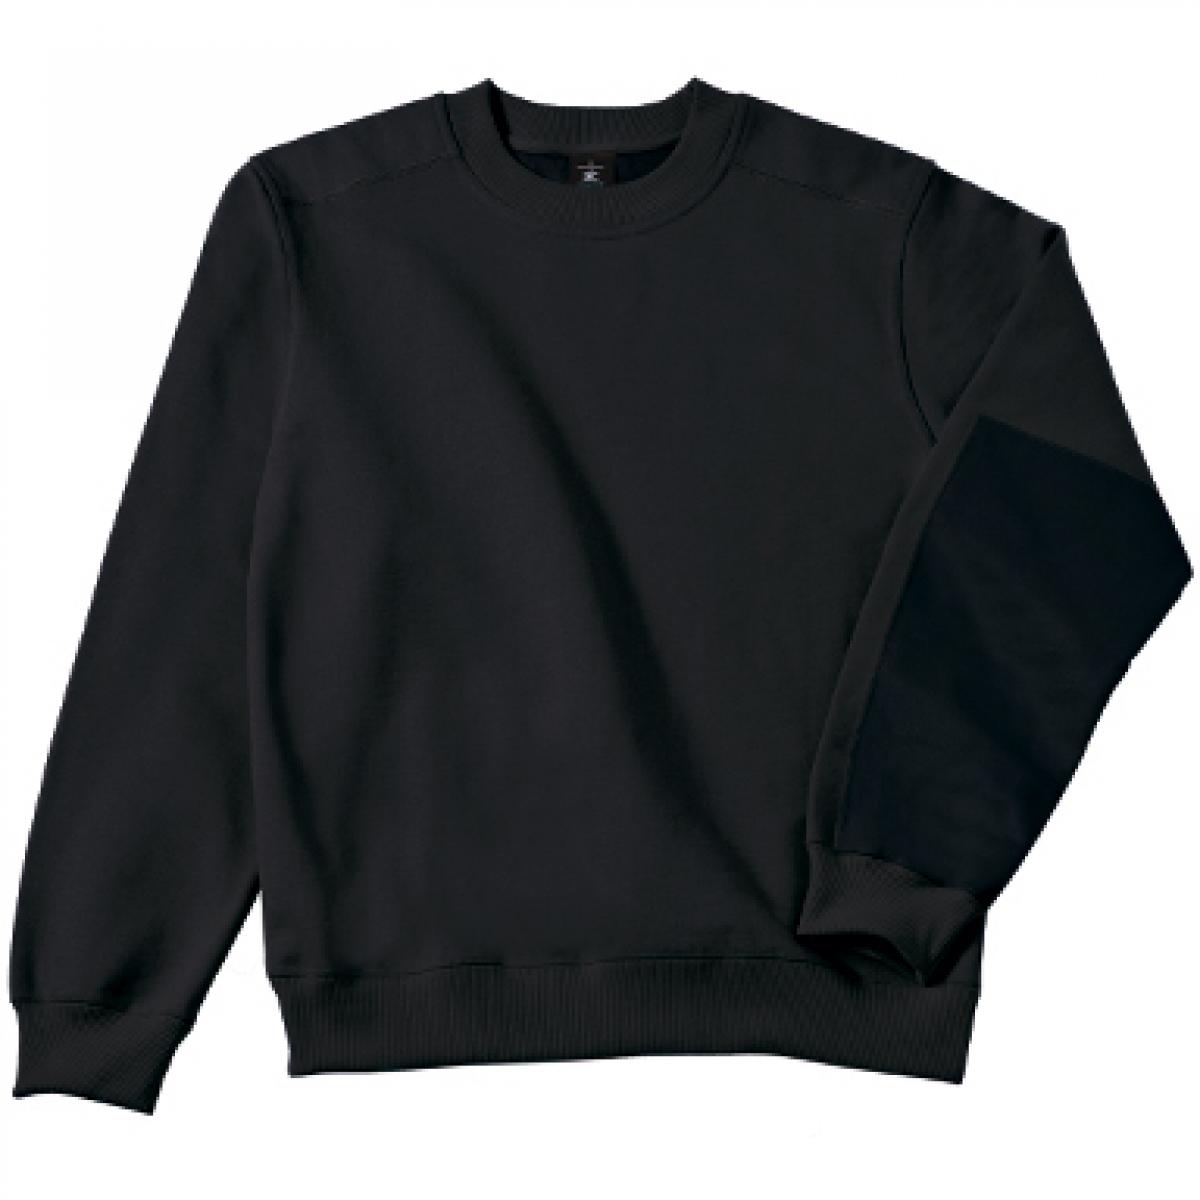 Hersteller: B&C Pro Collection Herstellernummer: WUC20 Artikelbezeichnung: Hero Pro Workwear Sweatshirt + Waschbar bis 60 °C Farbe: Black